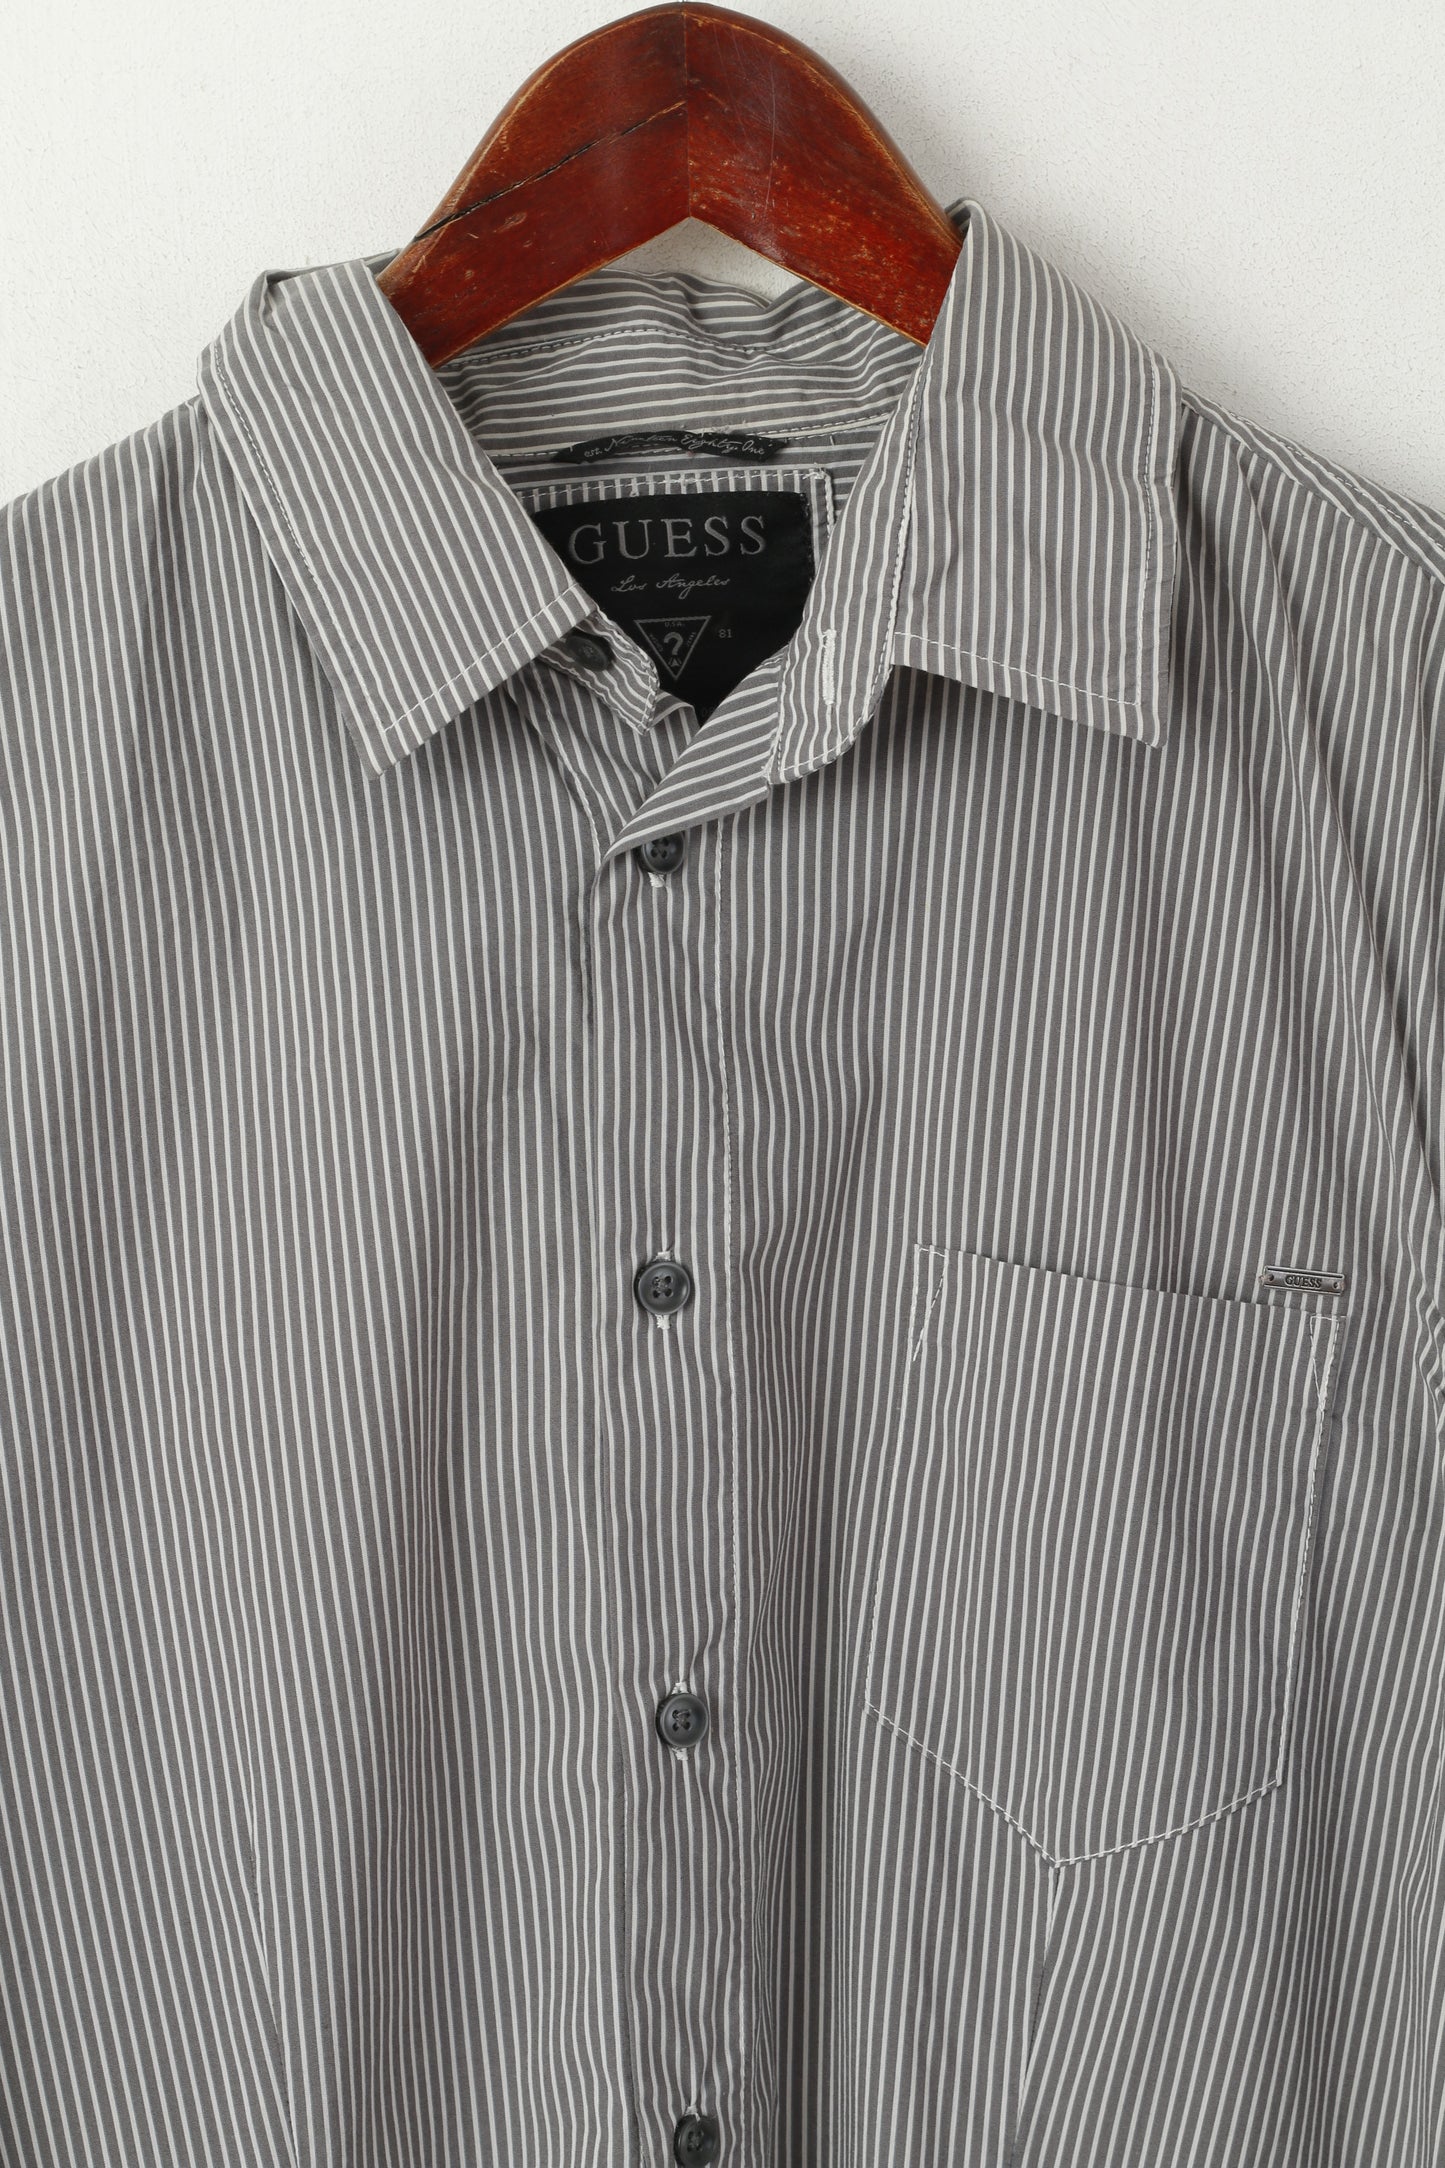 Guess Camicia casual da uomo M. Top con taschino a maniche lunghe in cotone elasticizzato a righe grigie